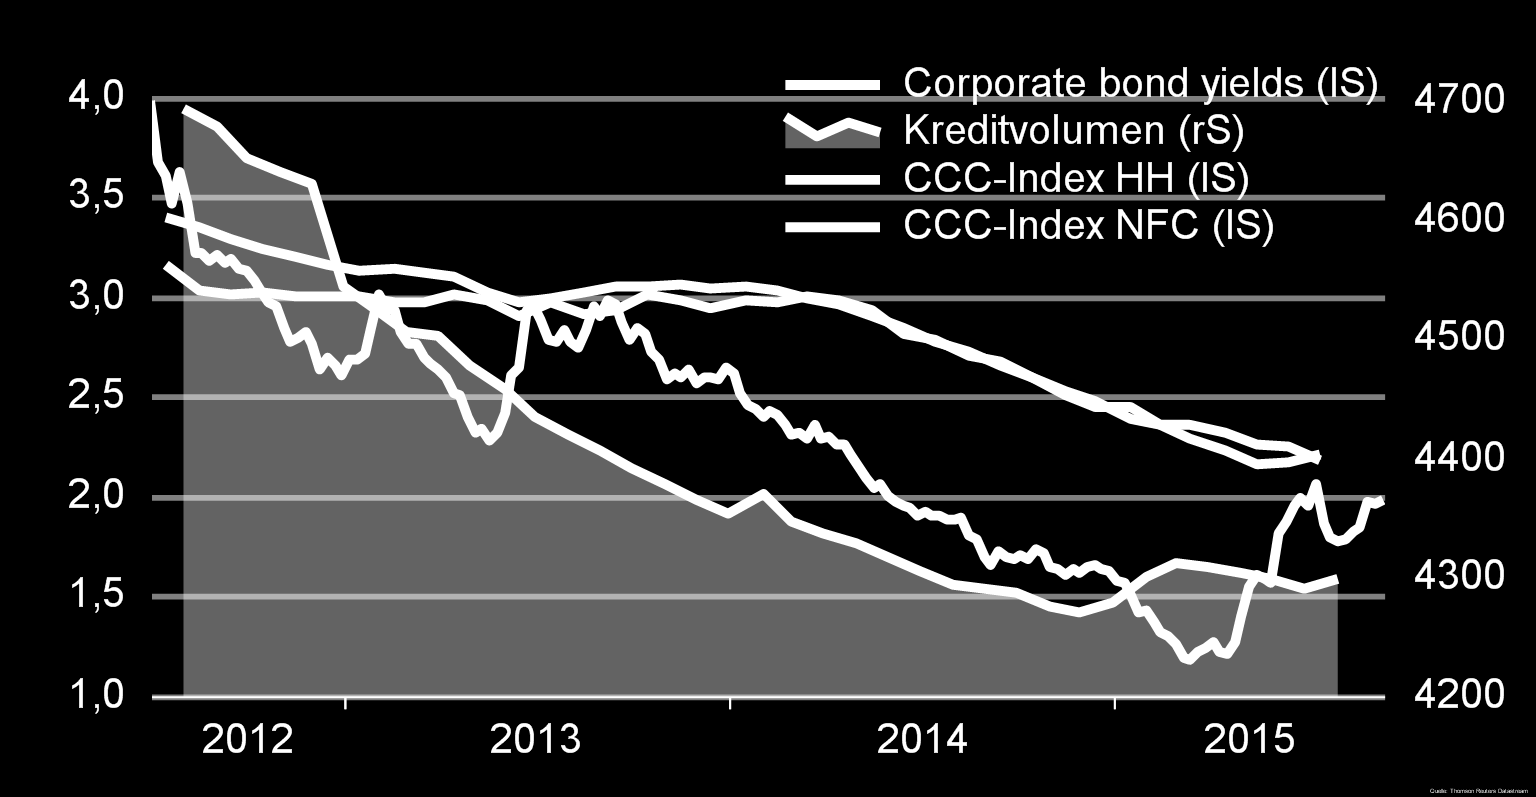 EZB: Wirkung von QE auf Risikoprämien verpufft? Kredite an NFCs, Volumina in Mrd. Euro, Kapitalmarktzinsen: IBOXX Euro non-fin.